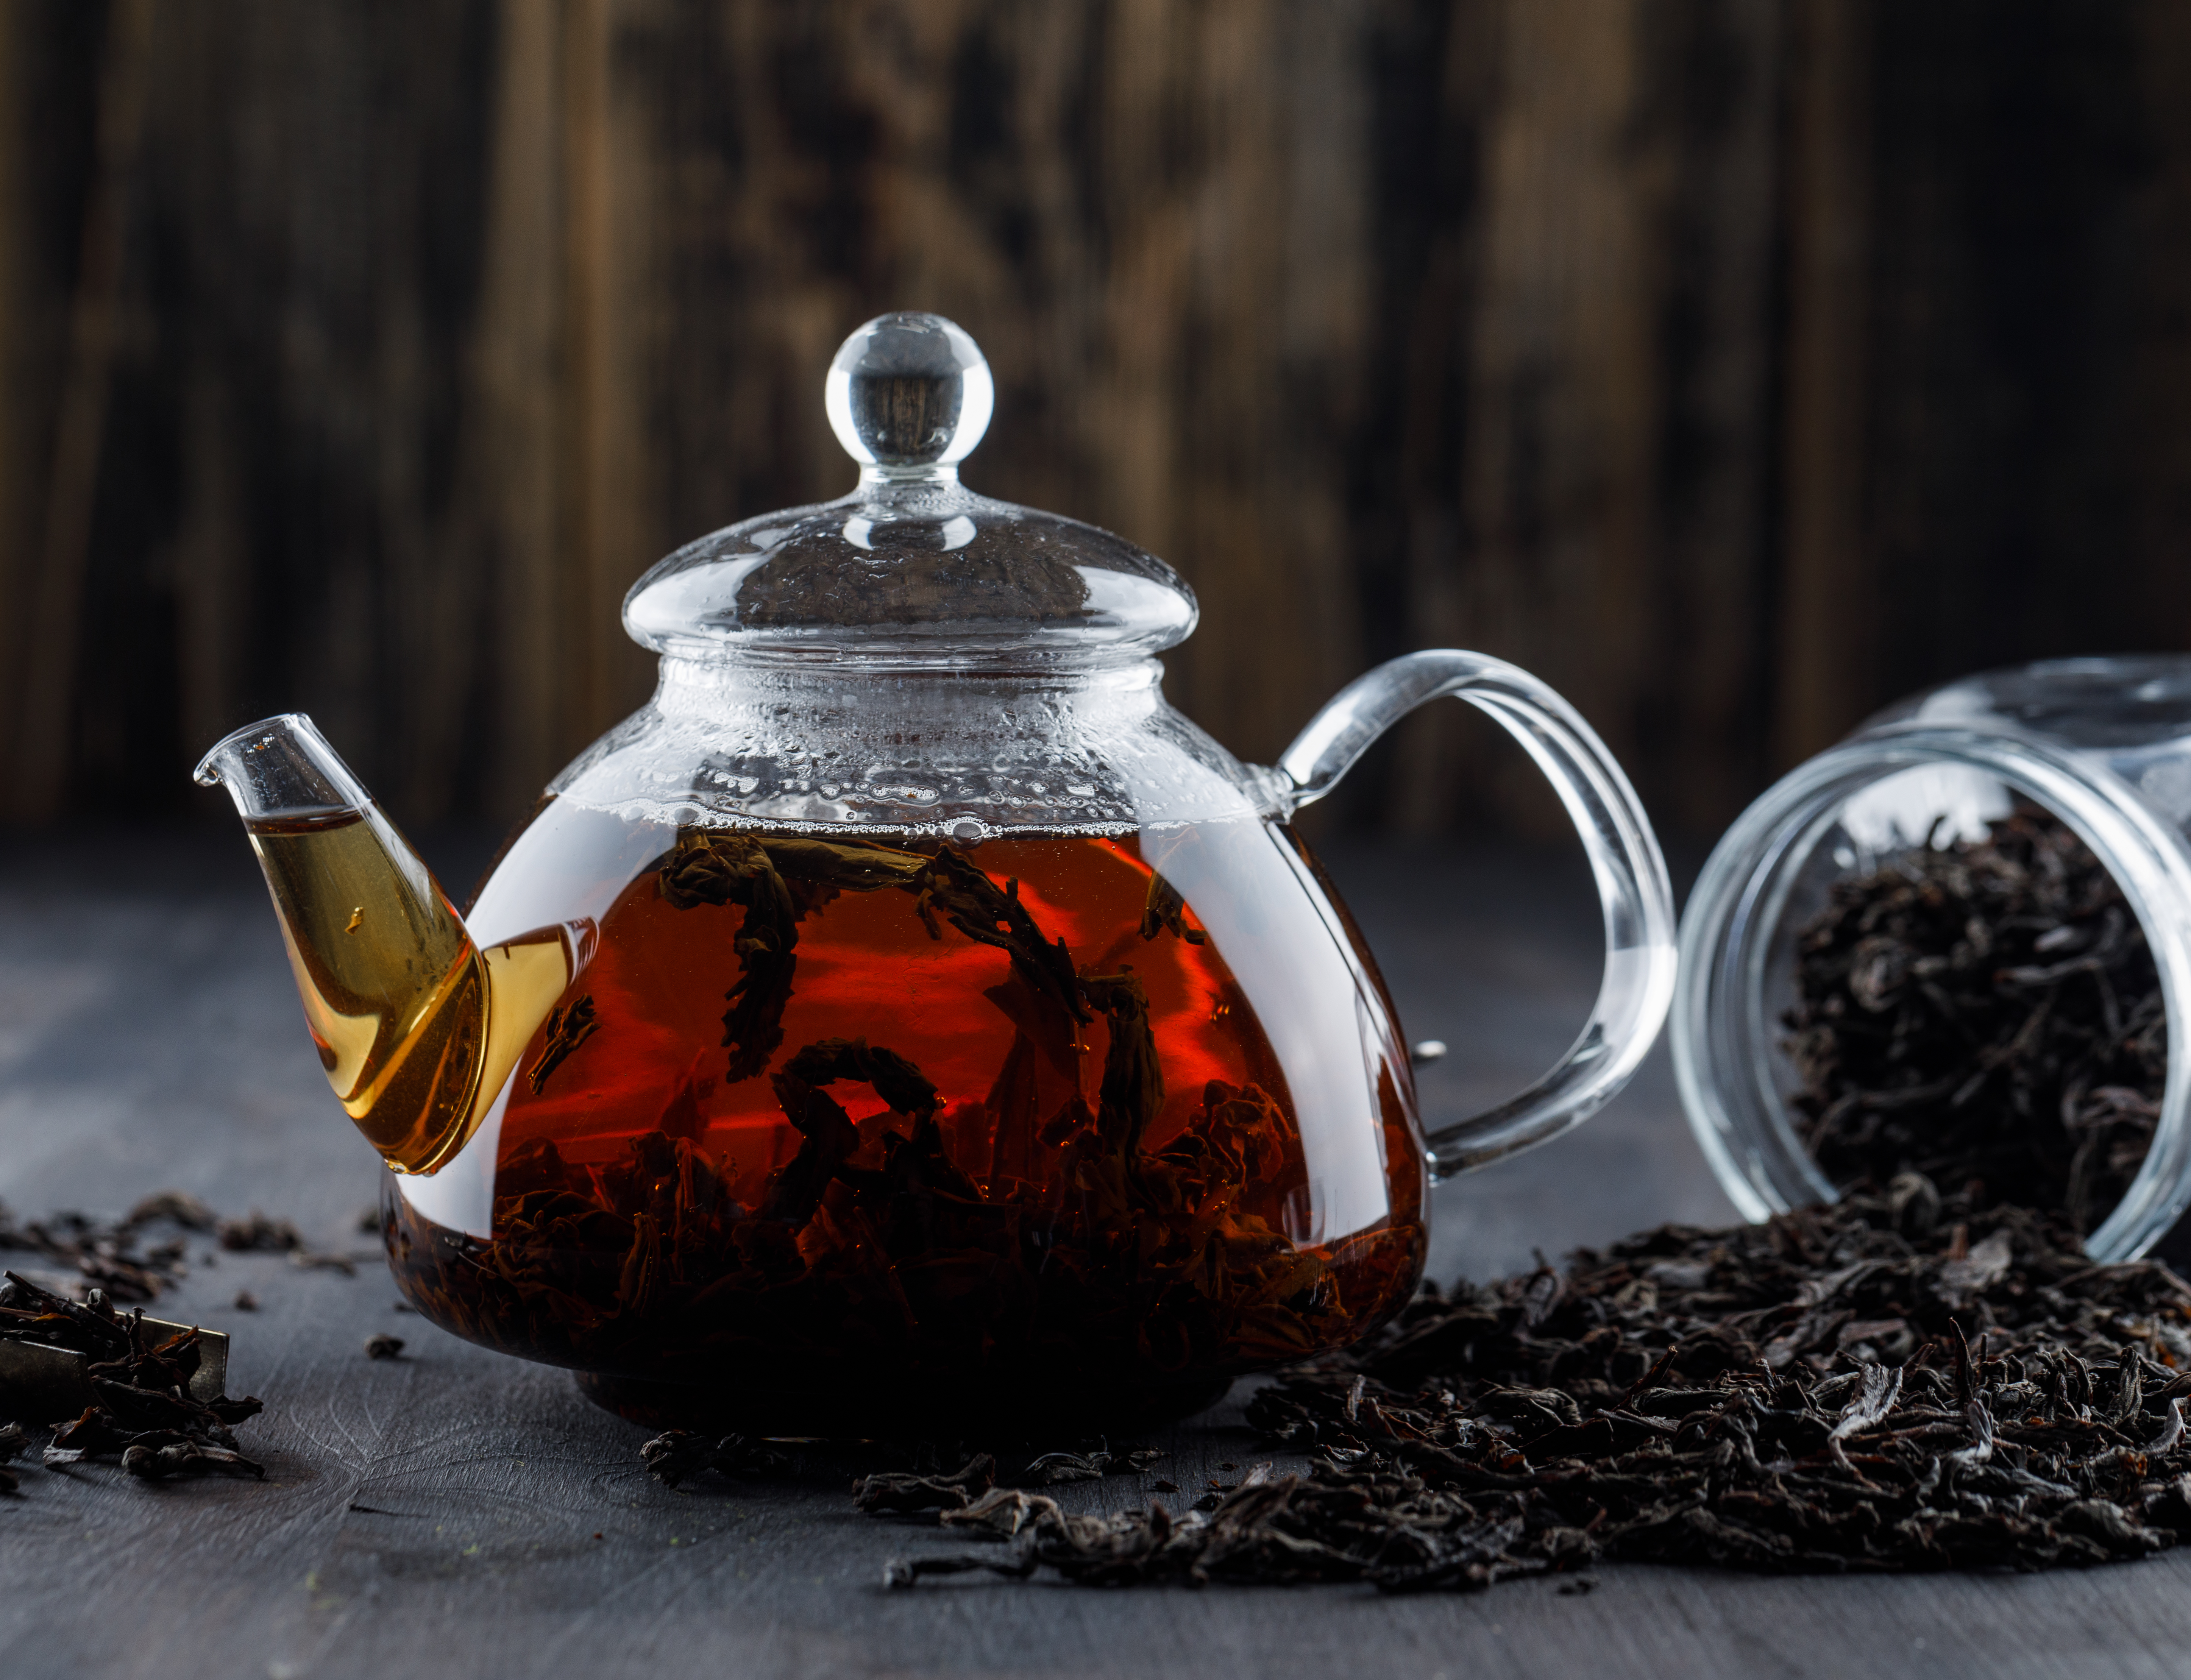 Врач Харлов заявил, что зеленый чай уничтожает печень не хуже алкоголя